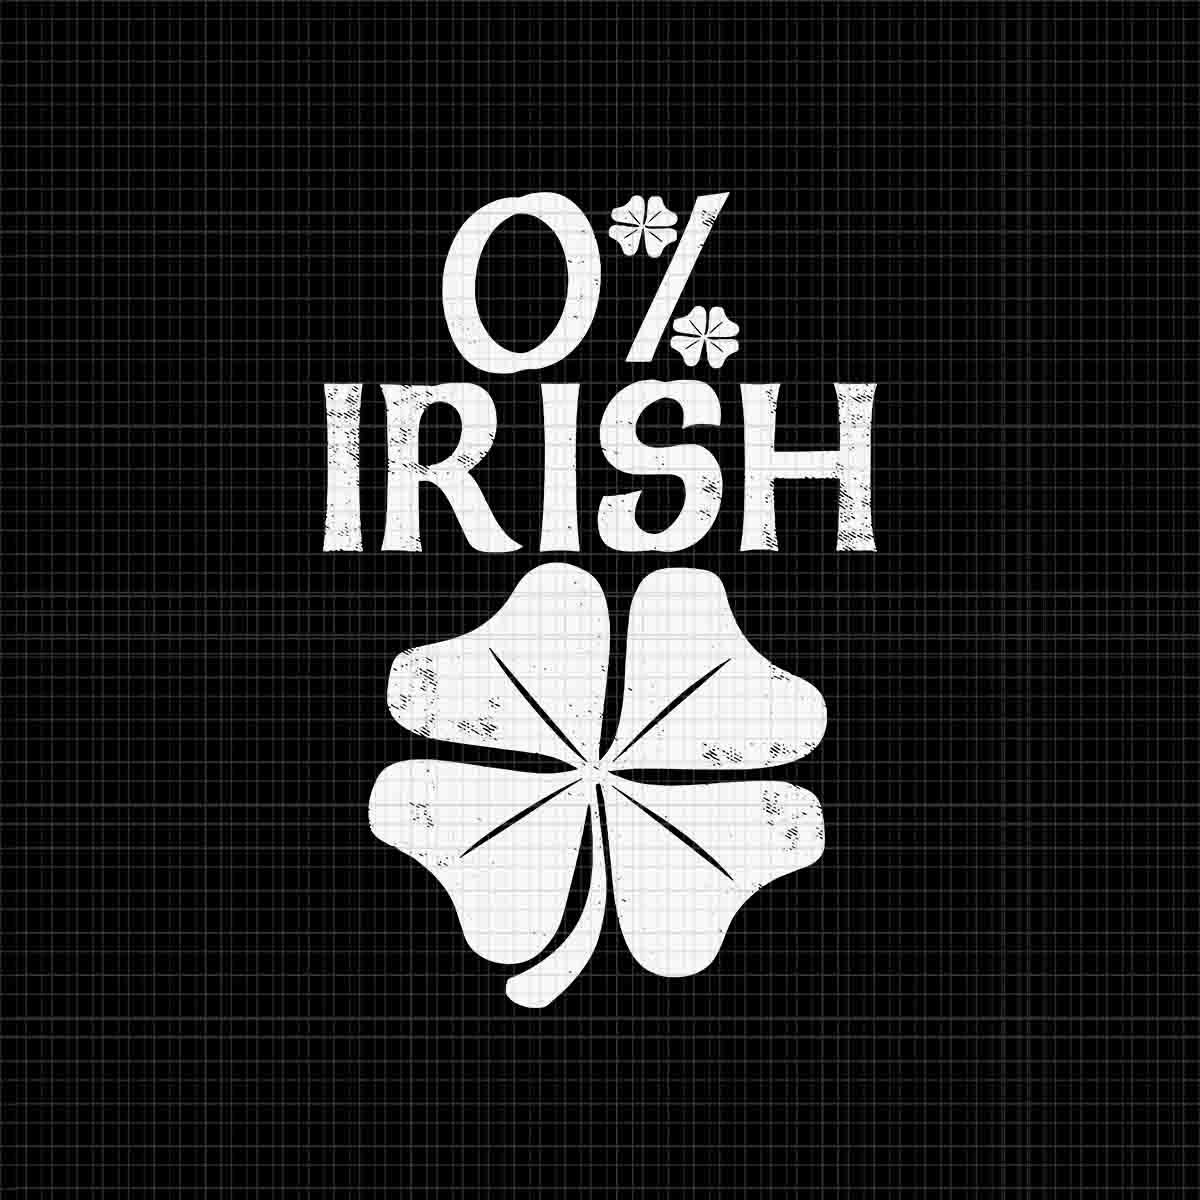 0% Irish